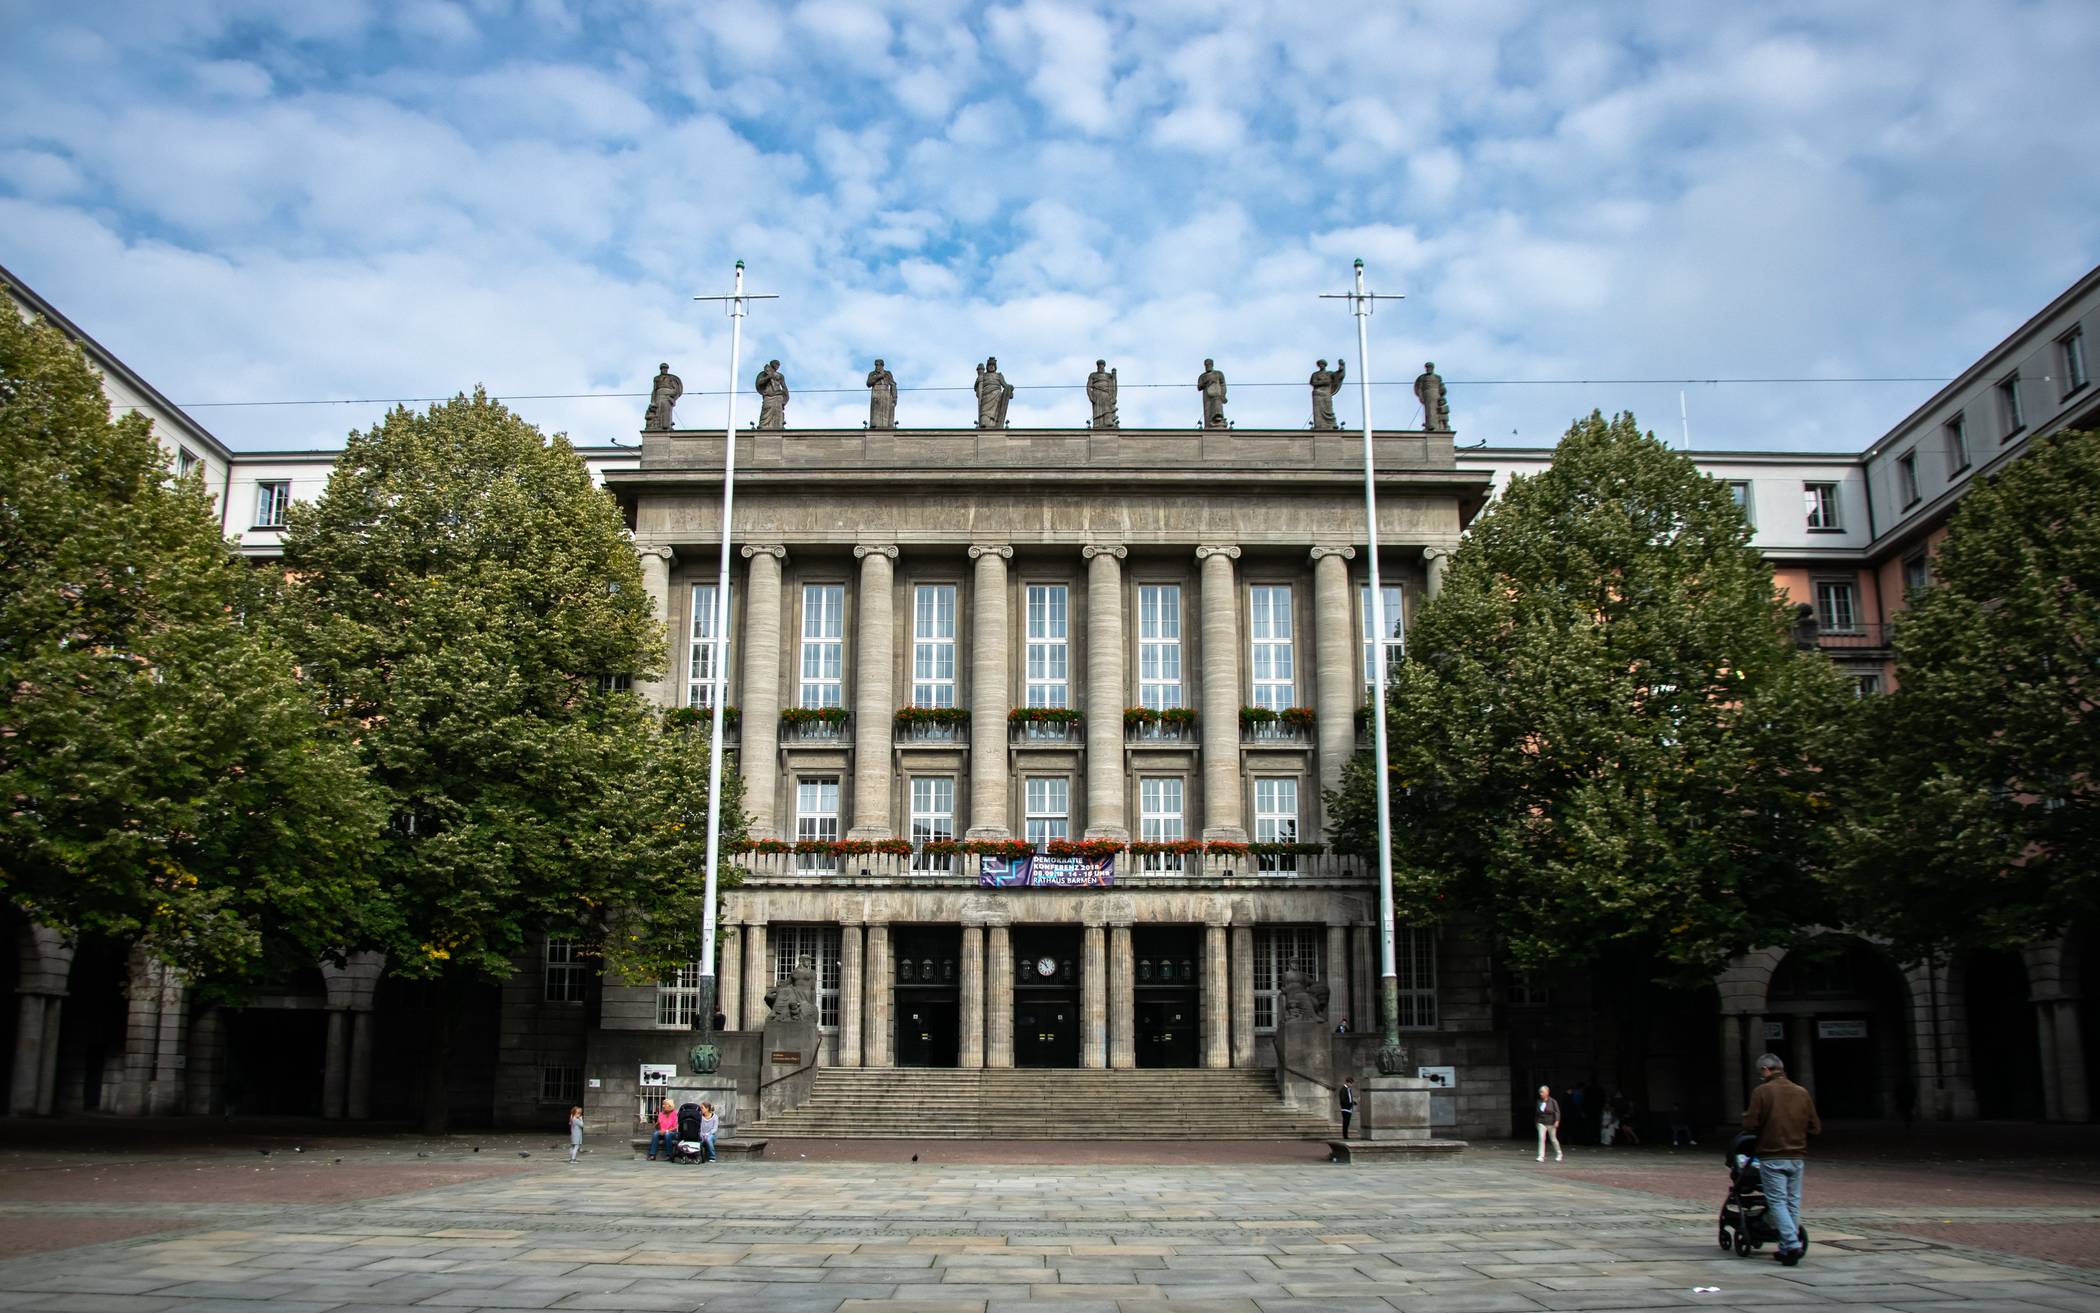  Das Wuppertaler Rathaus in Barmen. 